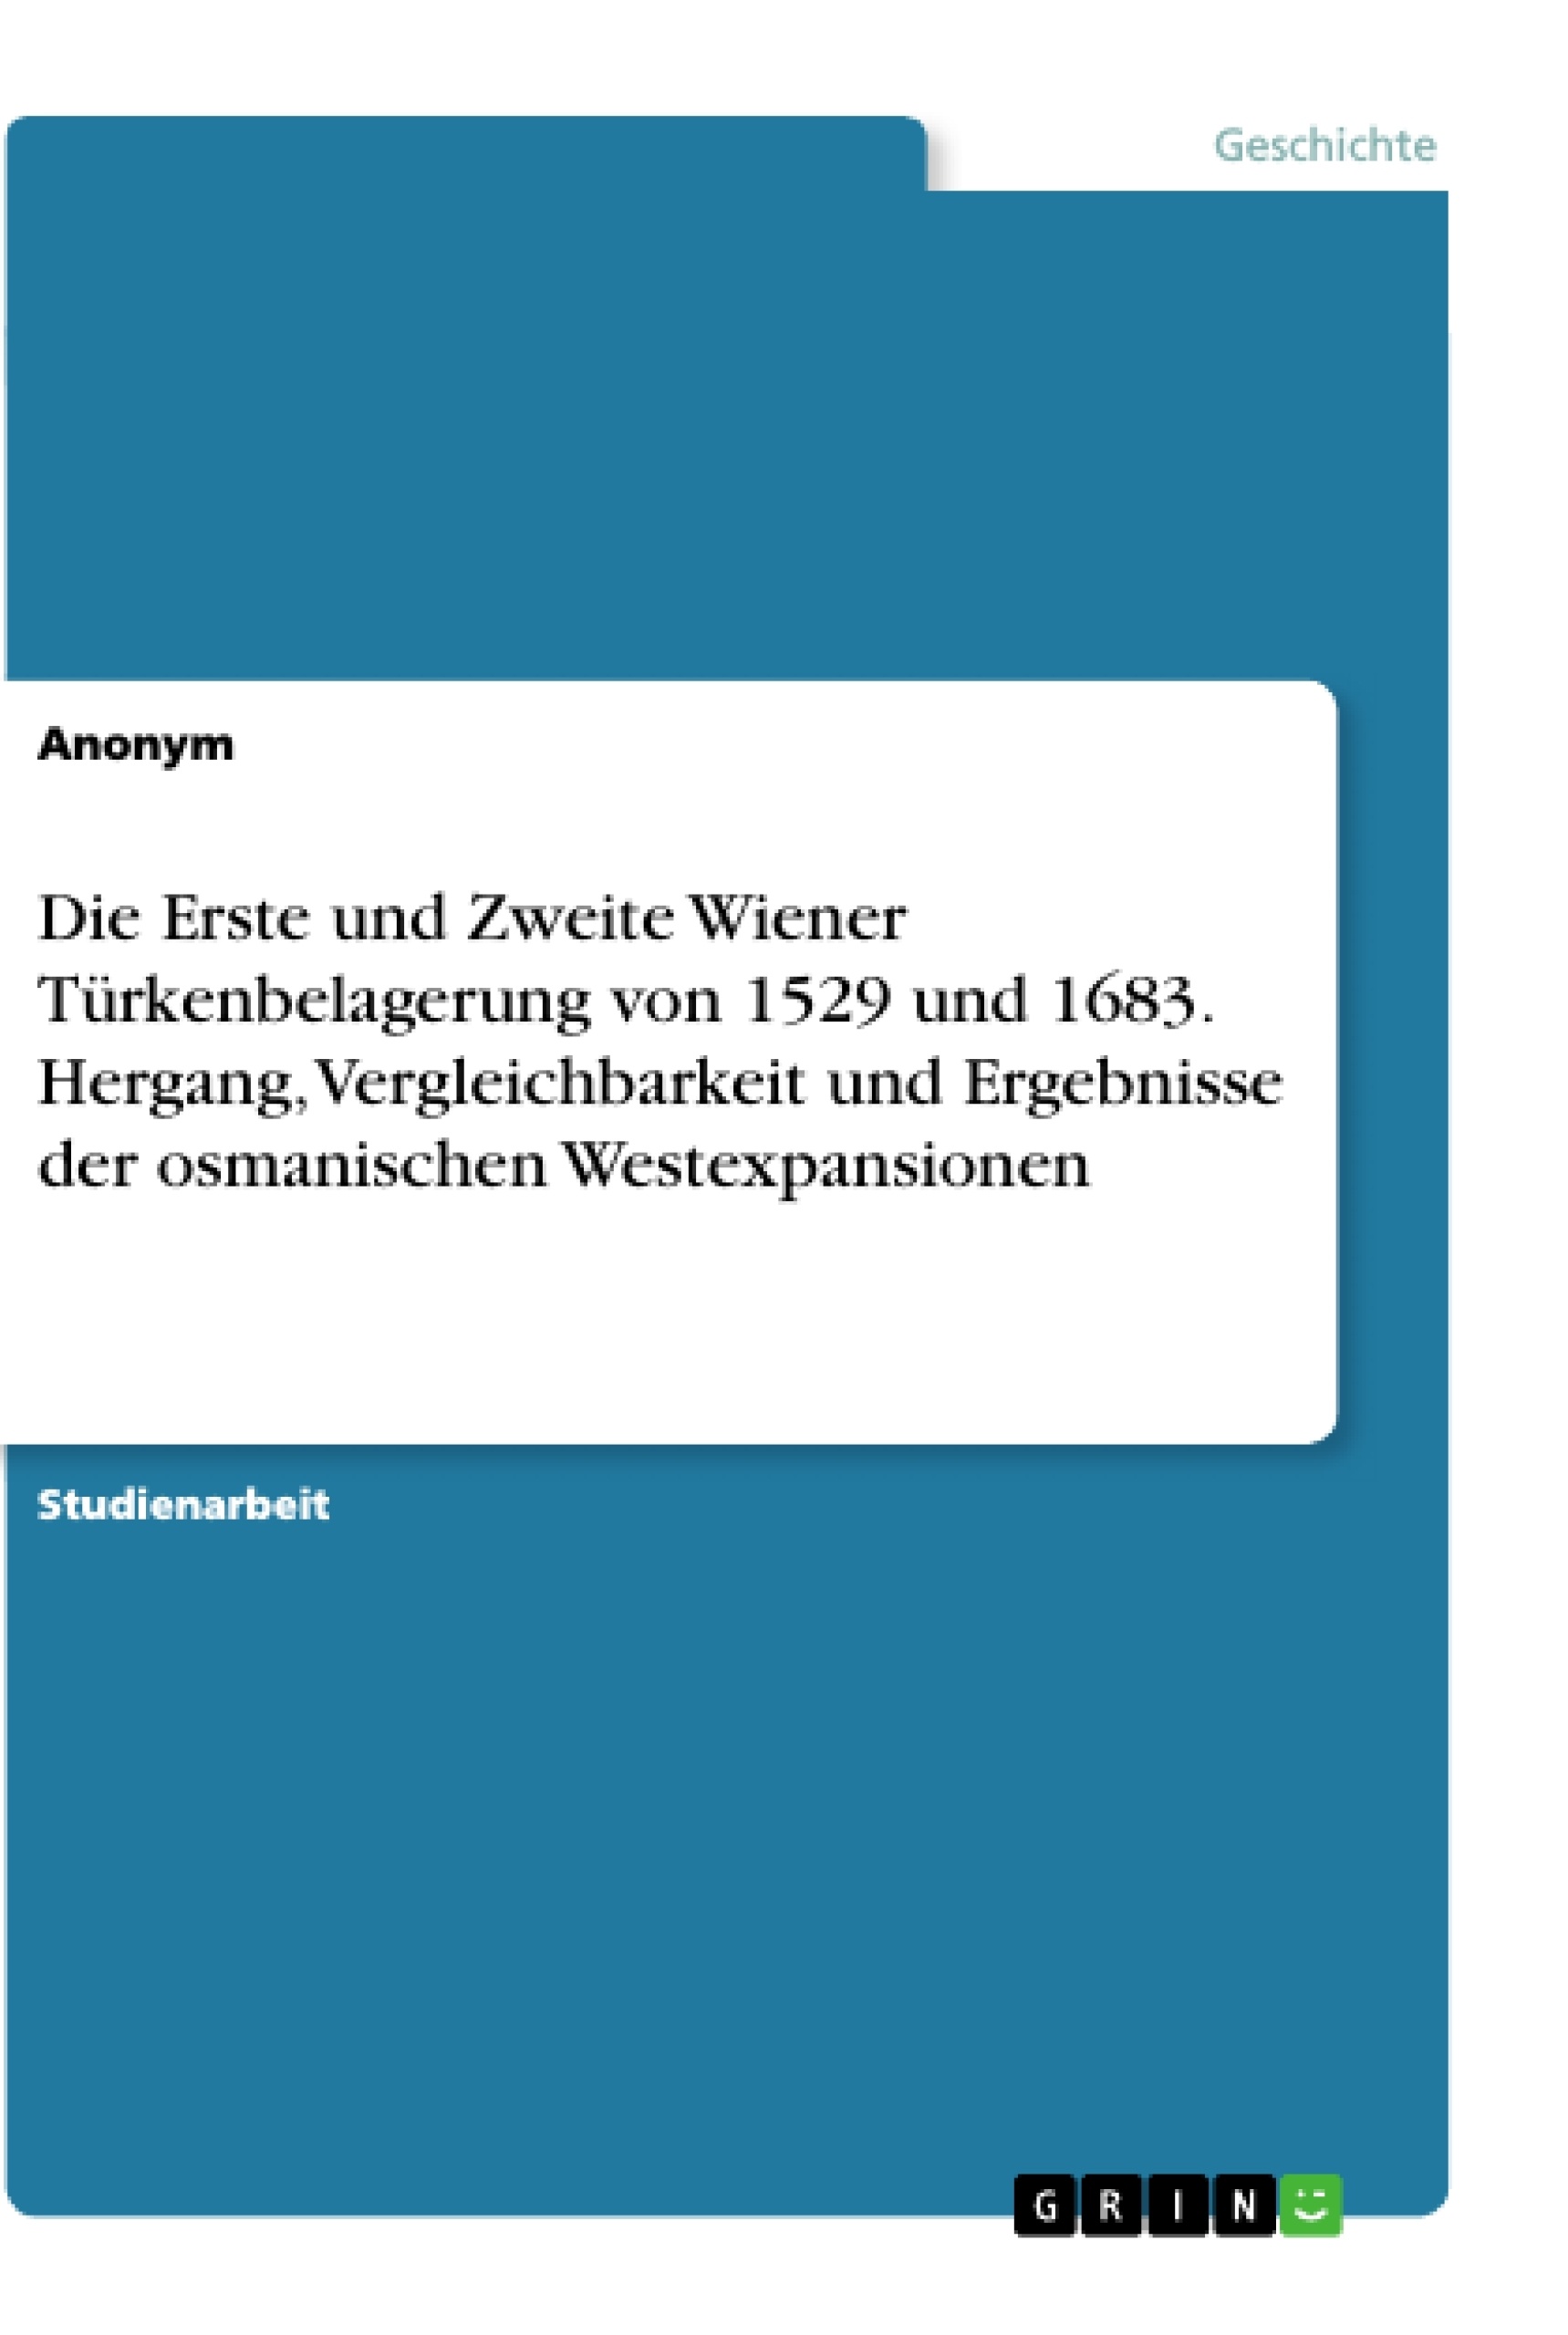 Titre: Die Erste und Zweite Wiener Türkenbelagerung von 1529 und 1683. Hergang, Vergleichbarkeit und Ergebnisse der osmanischen Westexpansionen